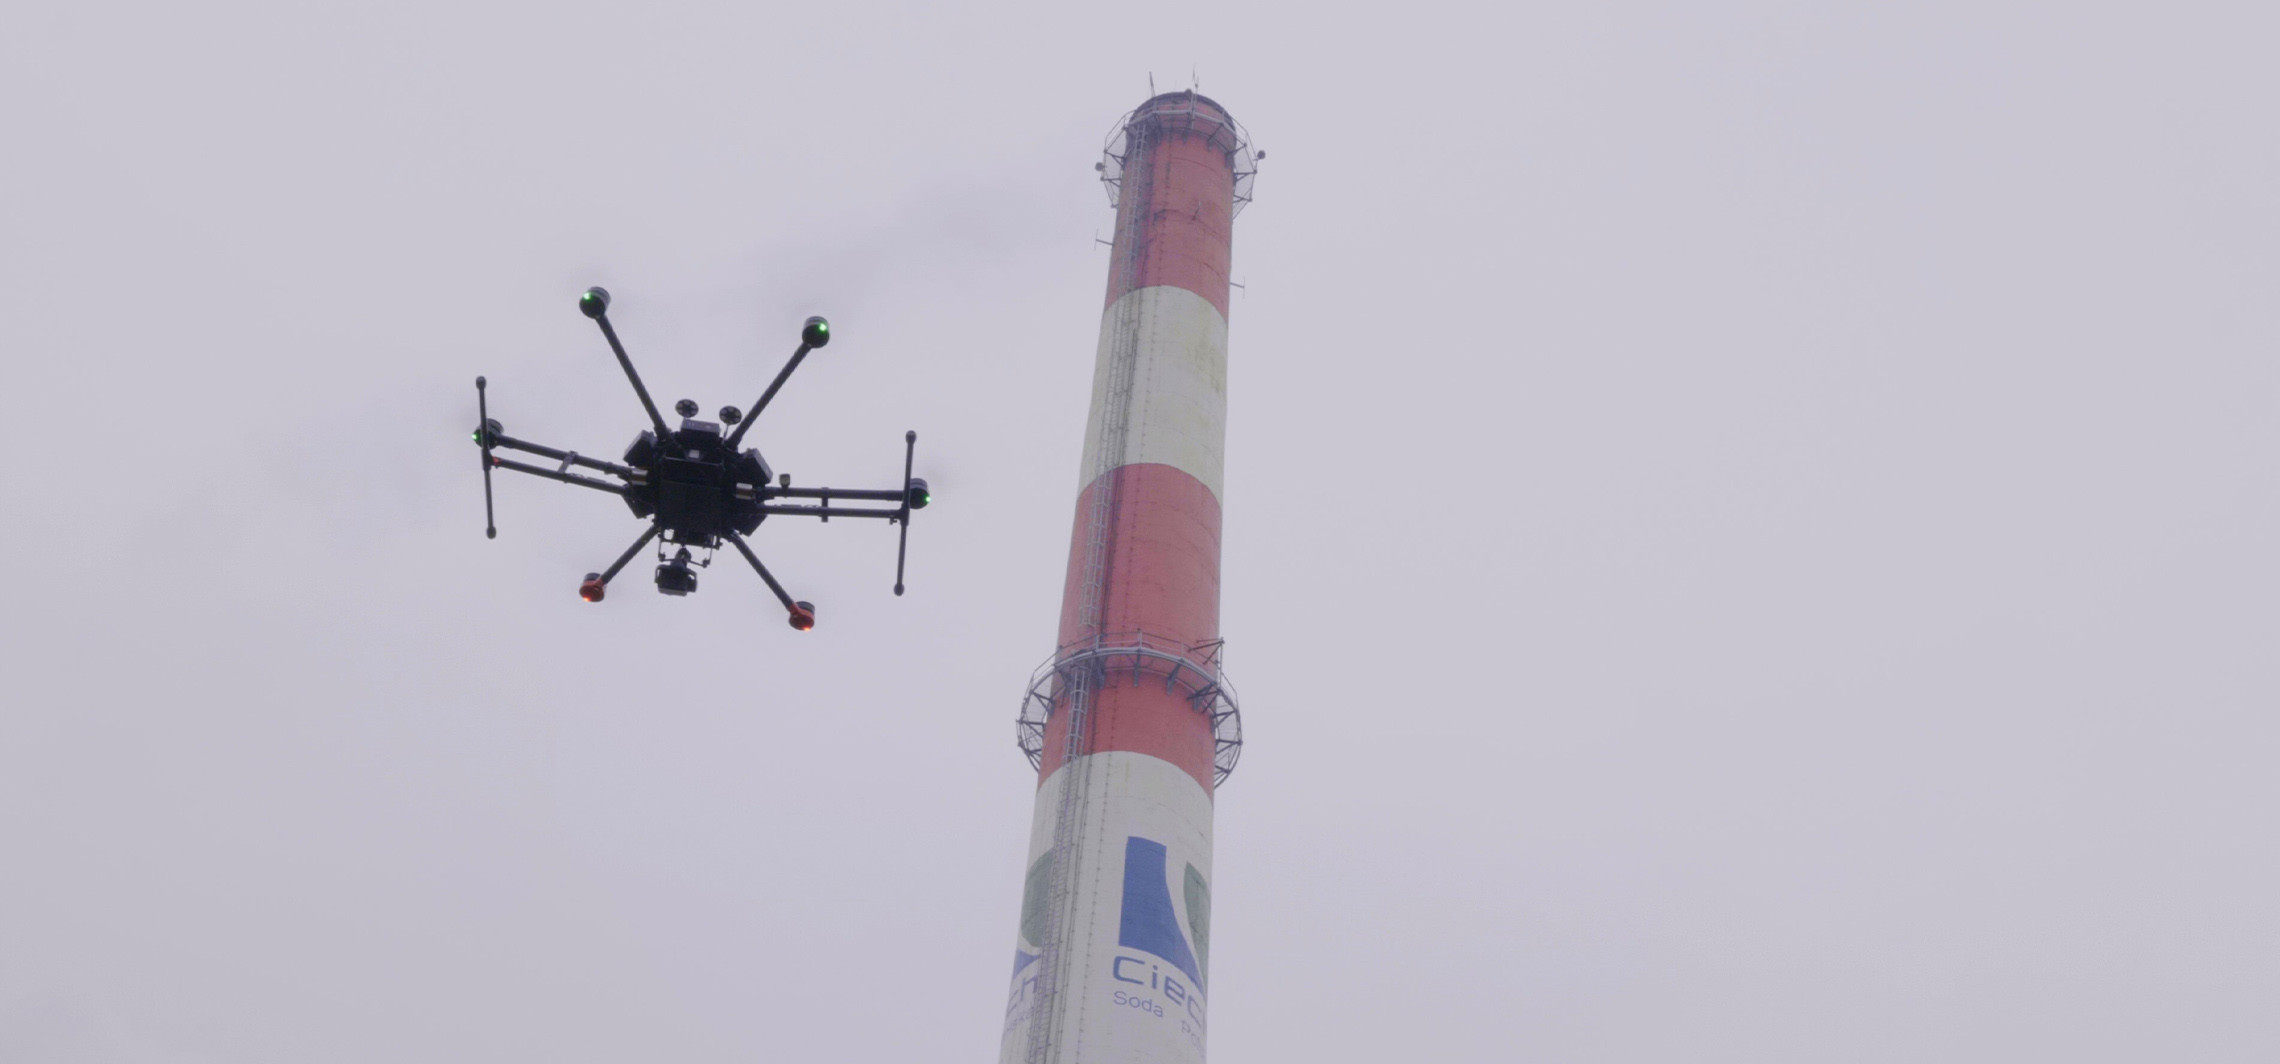 Inowrocław - Specjalistyczne drony nad zakładami sodowymi. Co robiły?